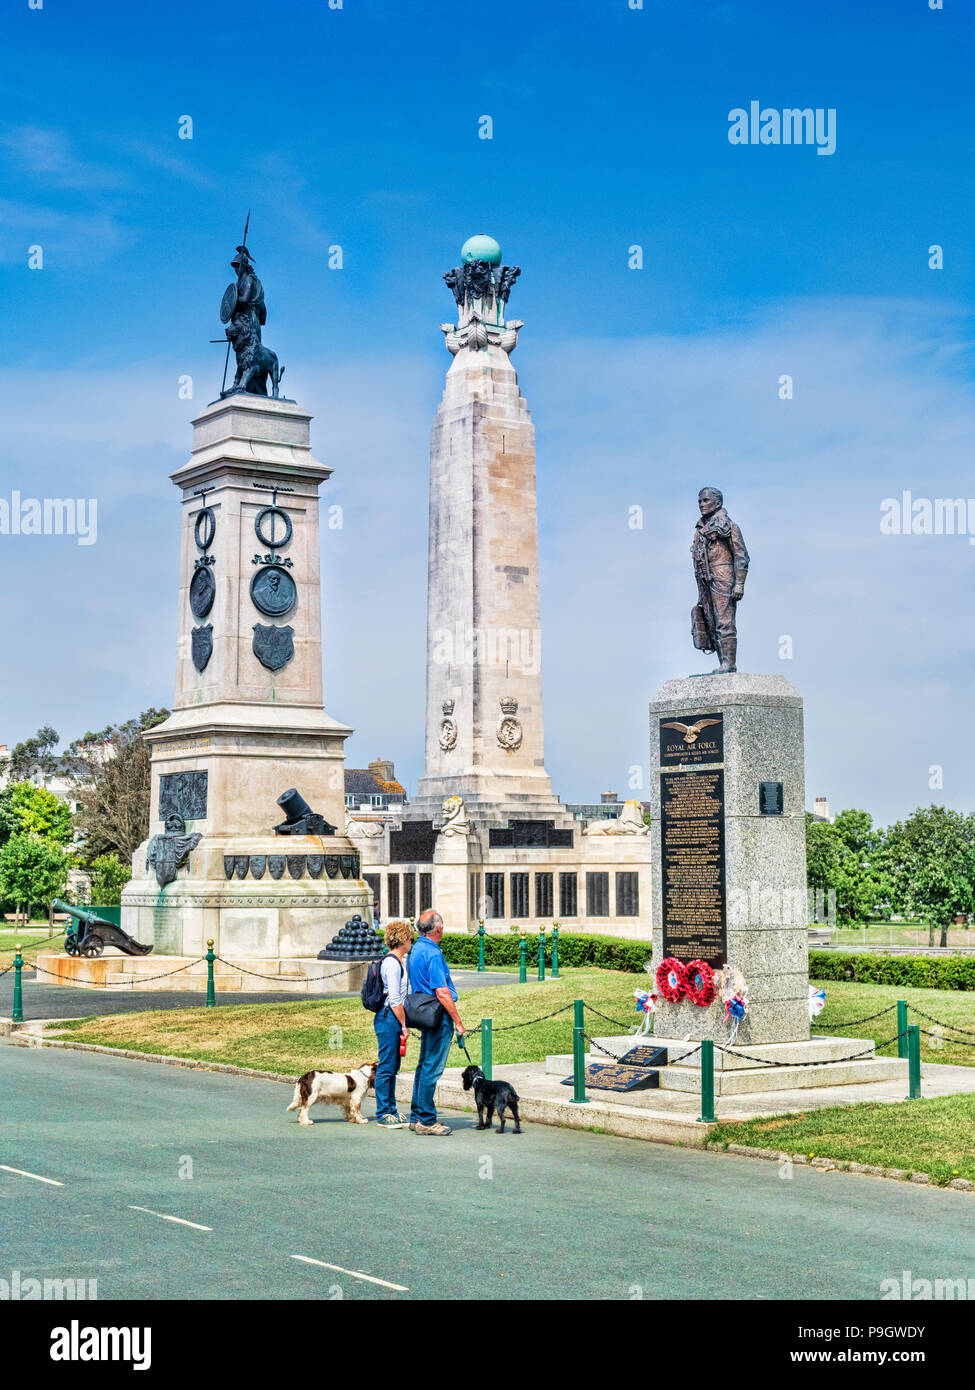 8 Giugno 2018: Plymouth, DEVON REGNO UNITO - Giovane con due cani guardando monumenti a Plymouth Hoe - da sinistra a destra, l'Armada monumento, la Royal Navy Monum Foto Stock